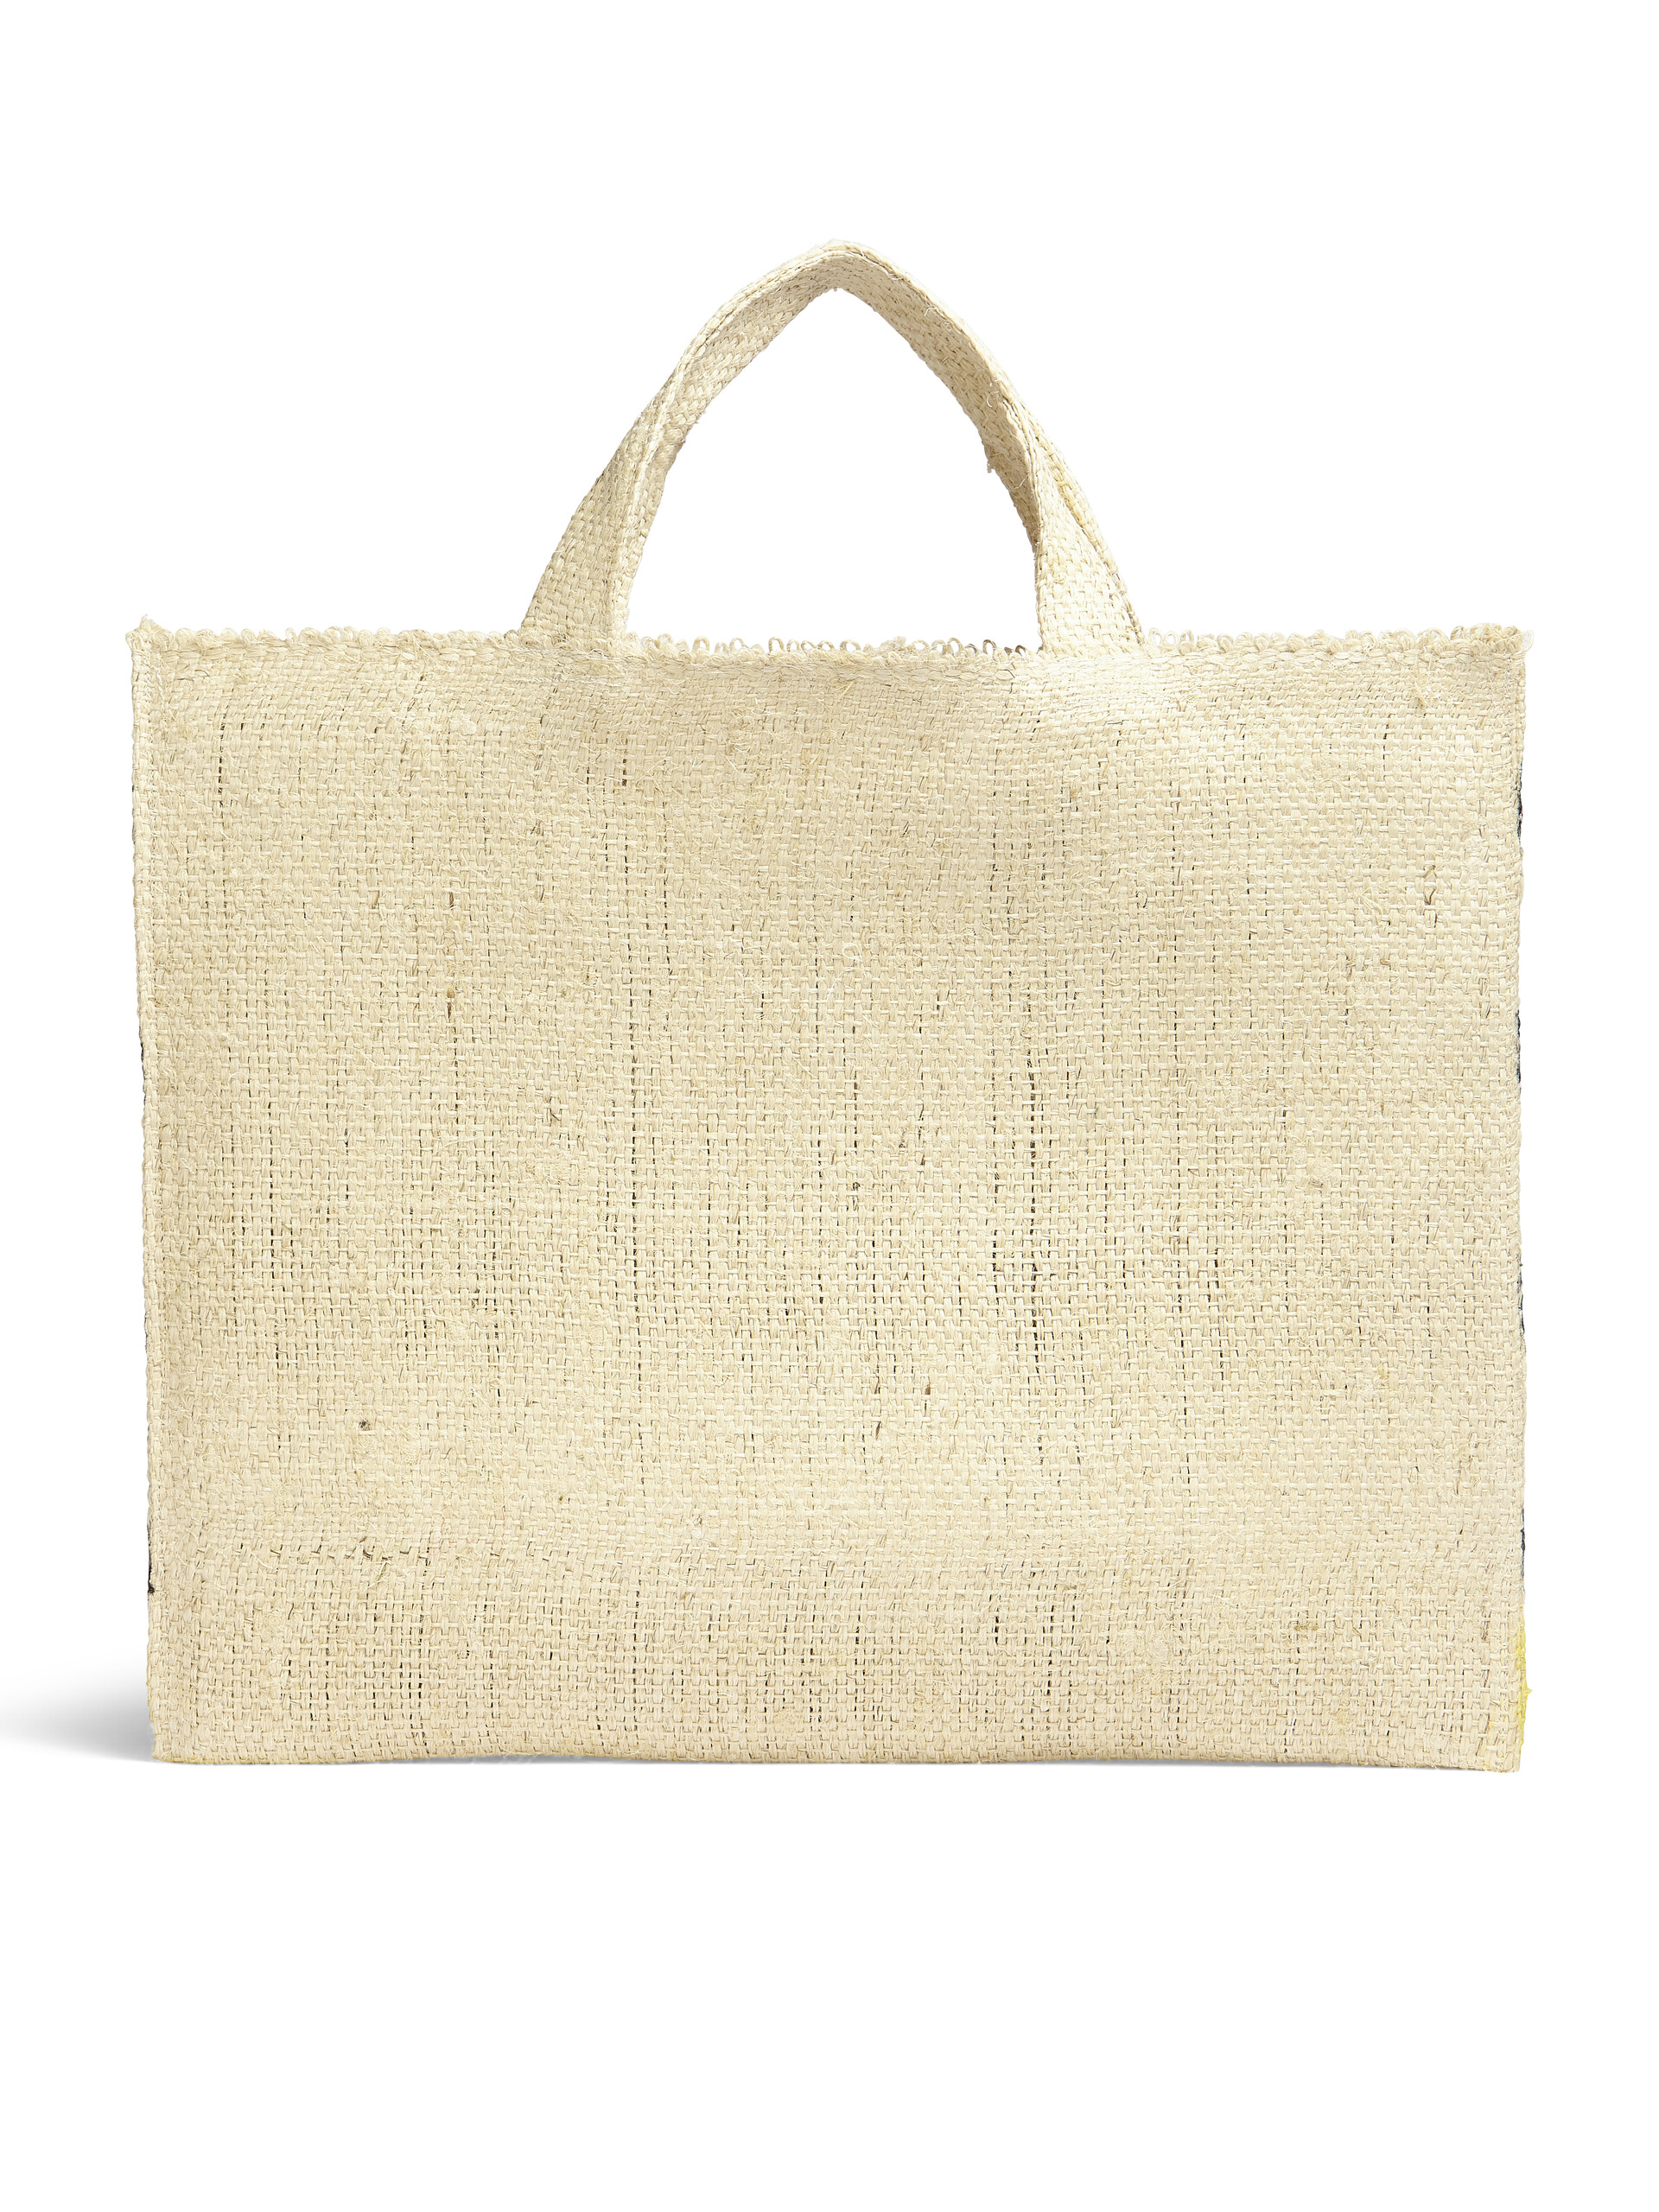 MARNI MARKET CANAPA large bag in black and yellow natural fiber - Shopping Bags - Image 3